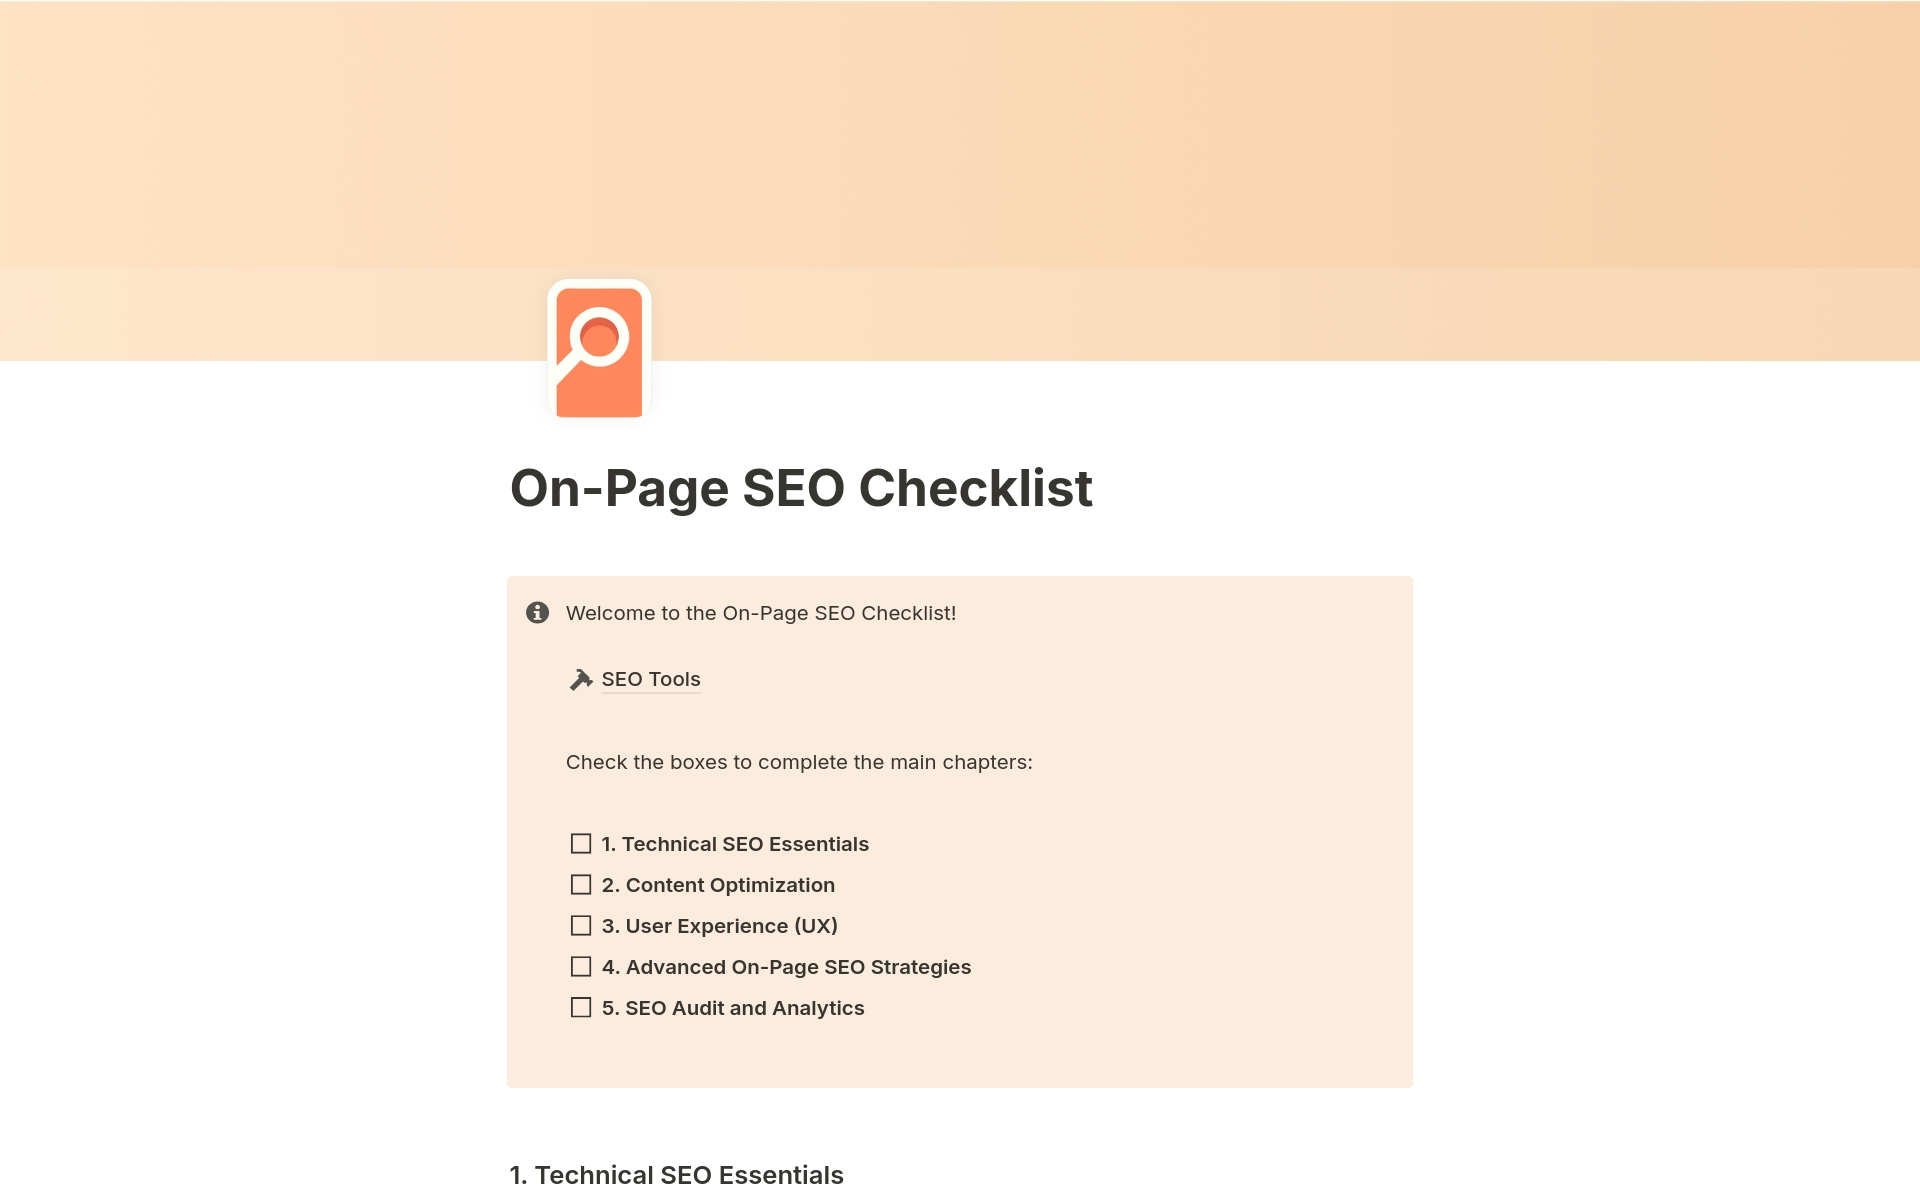 Vista previa de plantilla para On-Page SEO Checklist